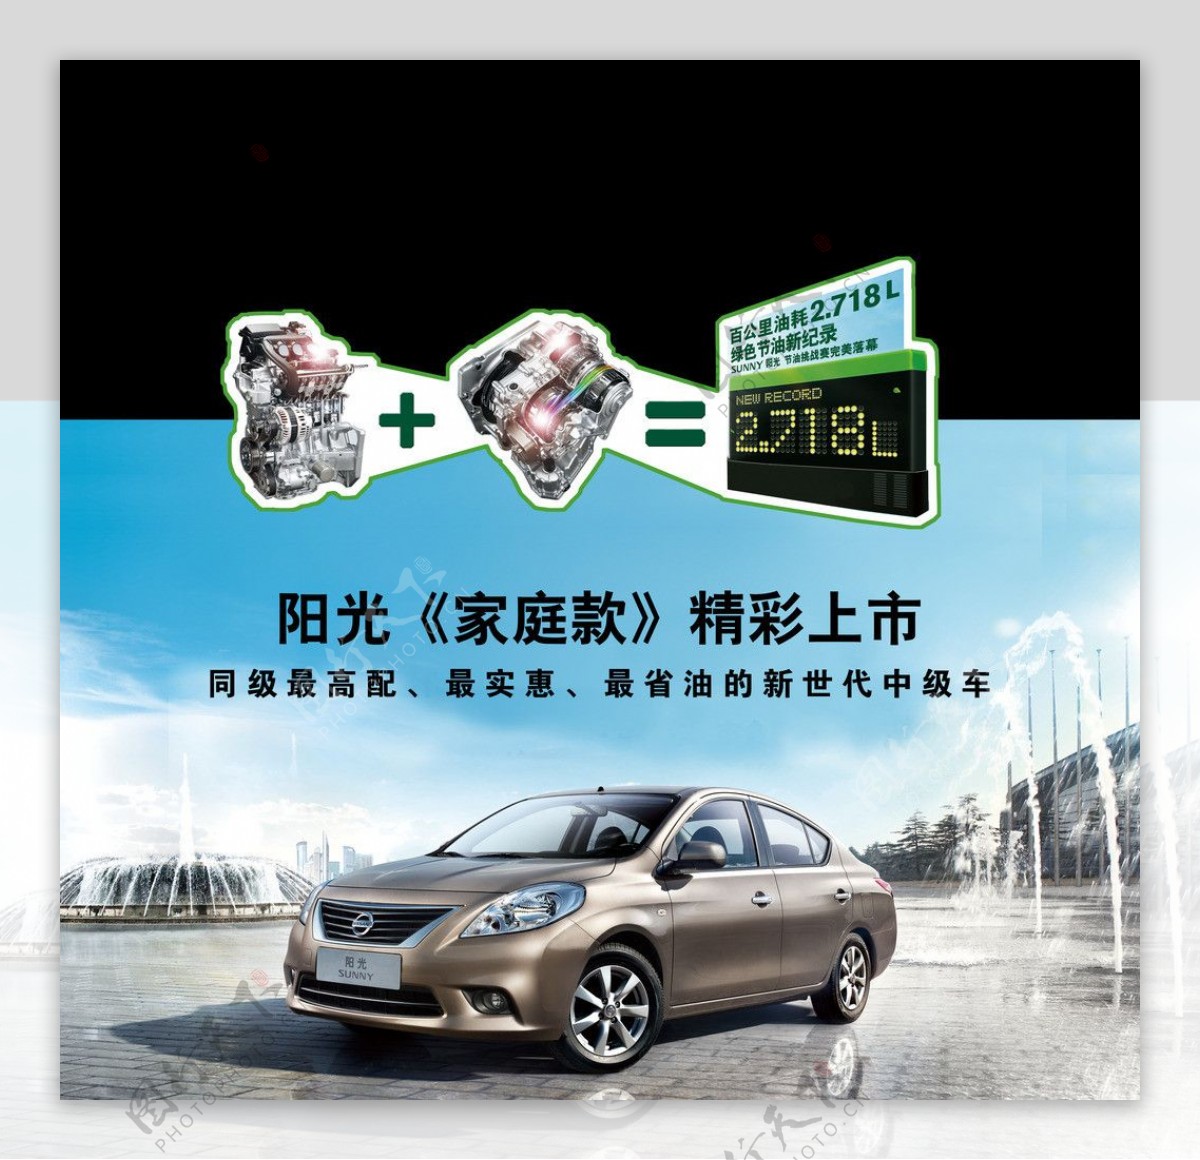 阳光东风日产合资品牌汽车图片